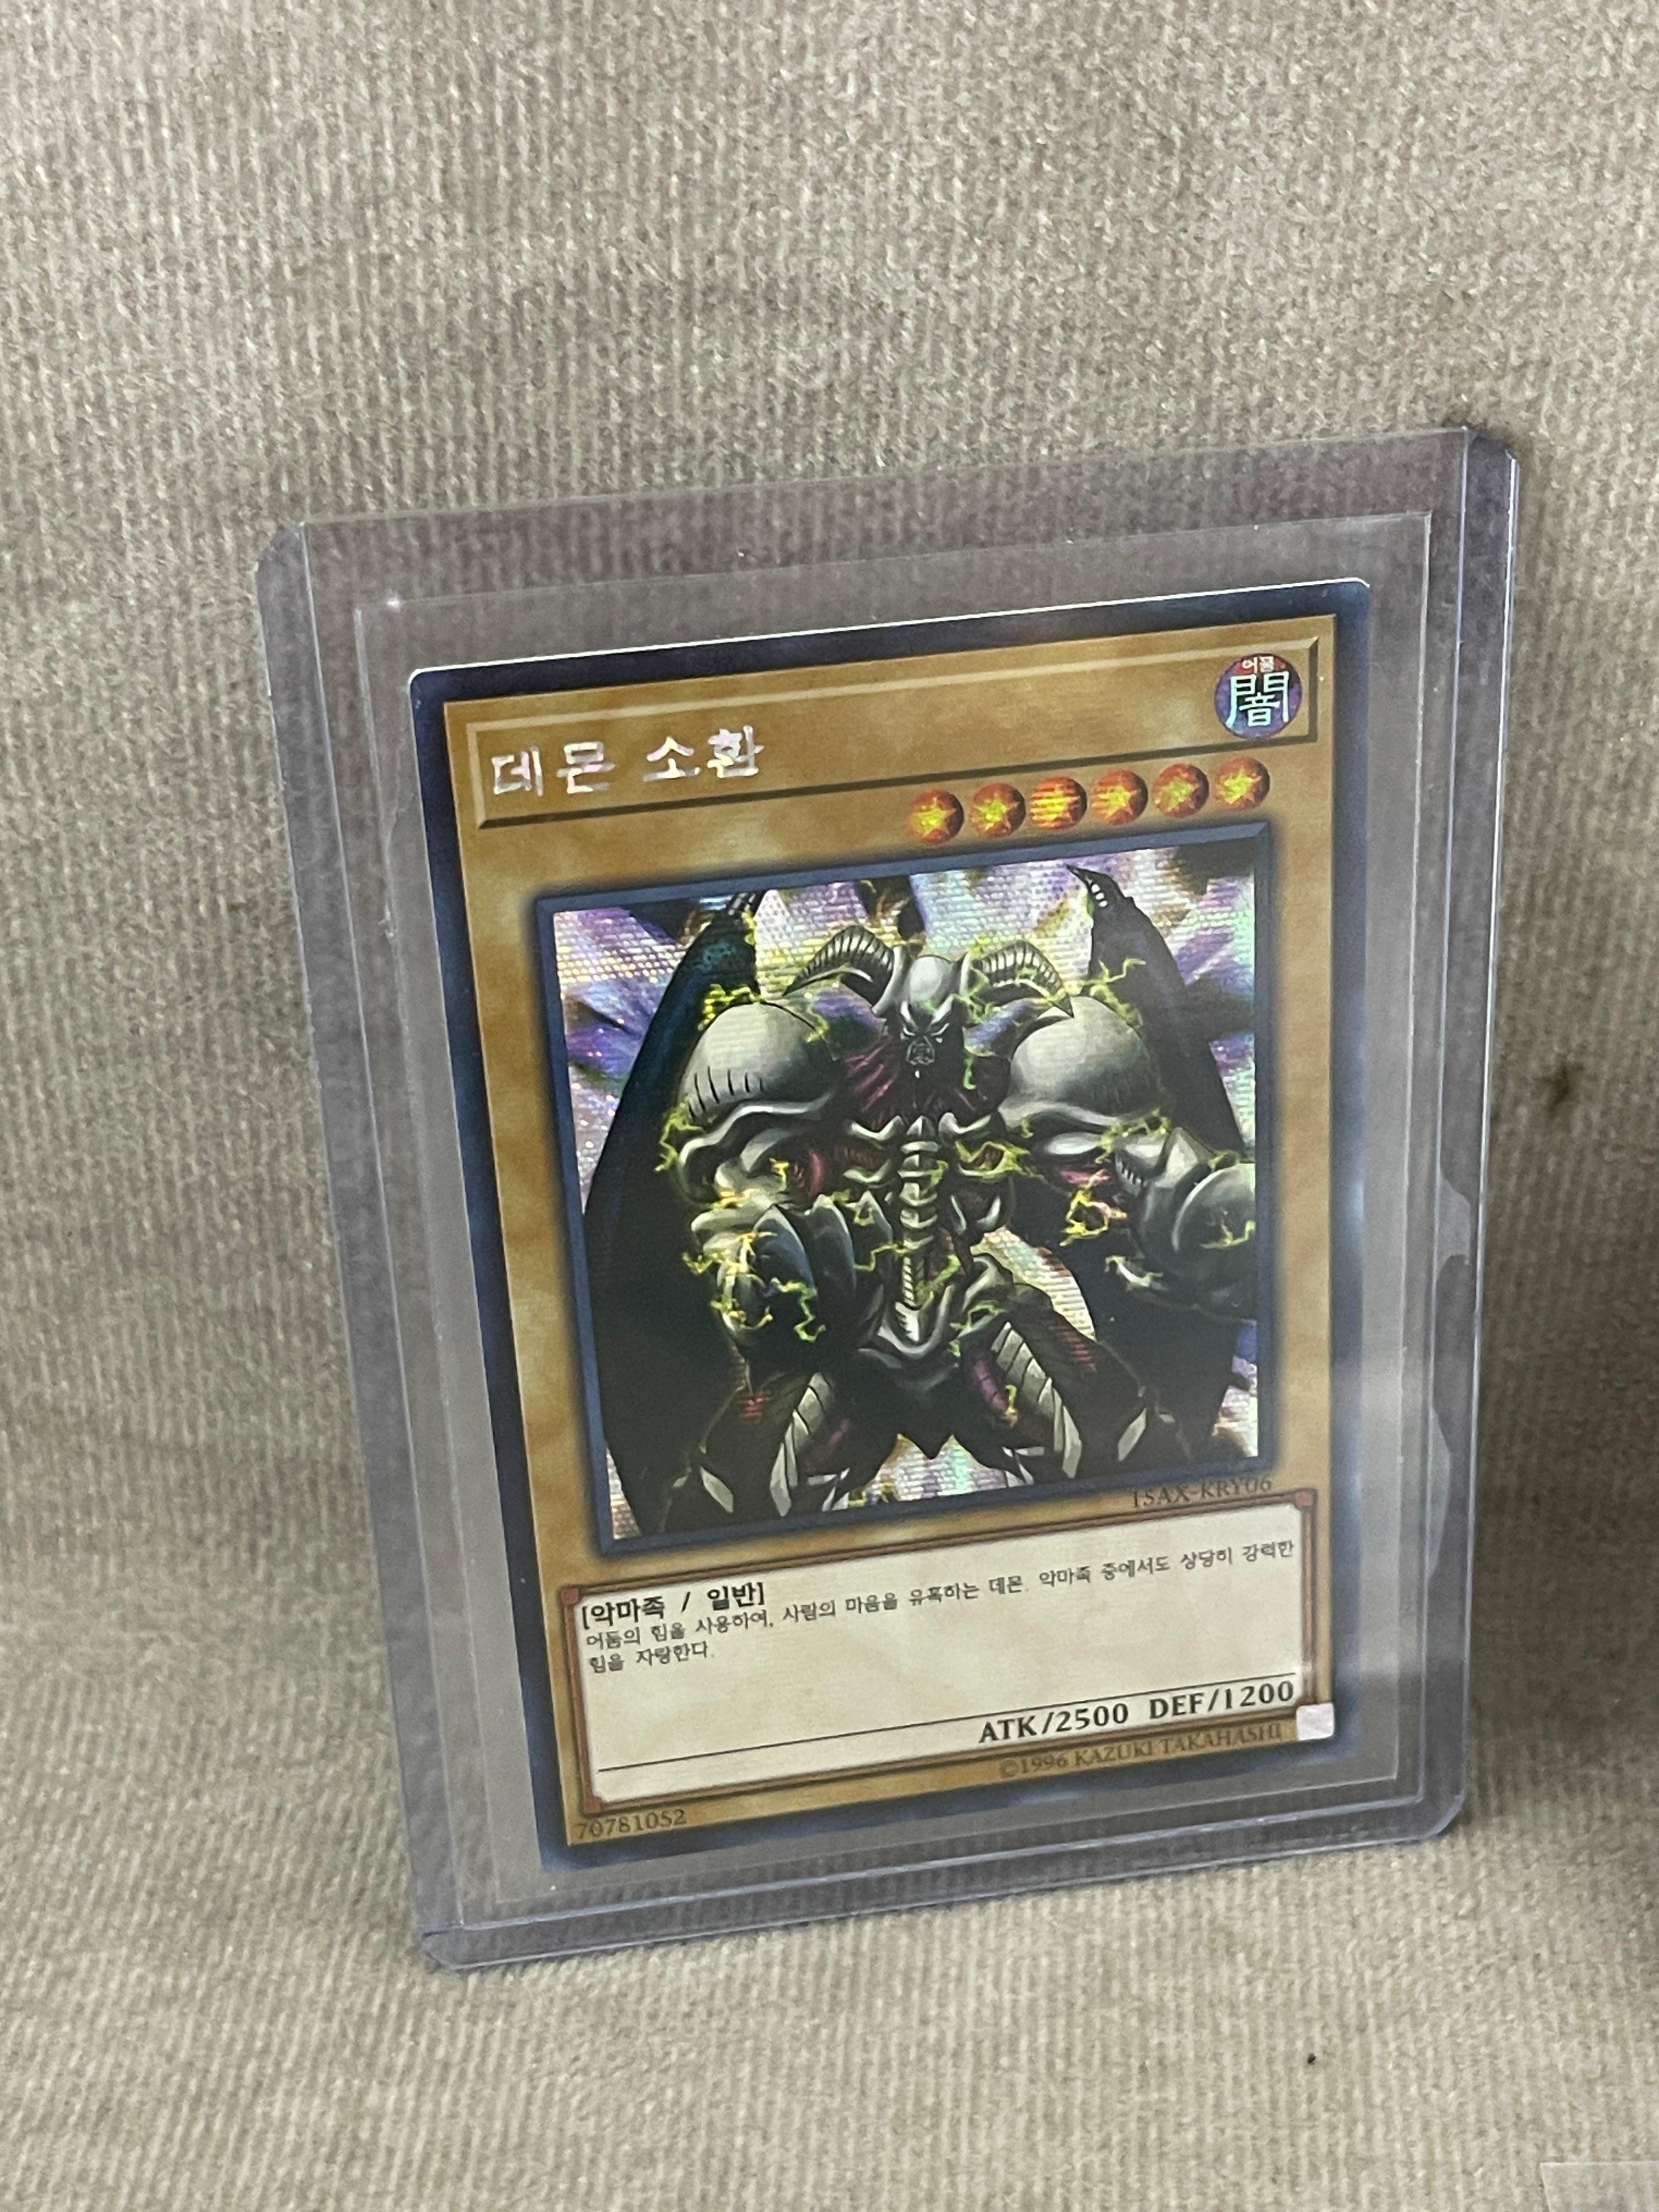 Yu-Gi-Oh! Duelist Road Piece of Memory Ultra Rare Secret Rare Millennium Rare Trading Card Lot